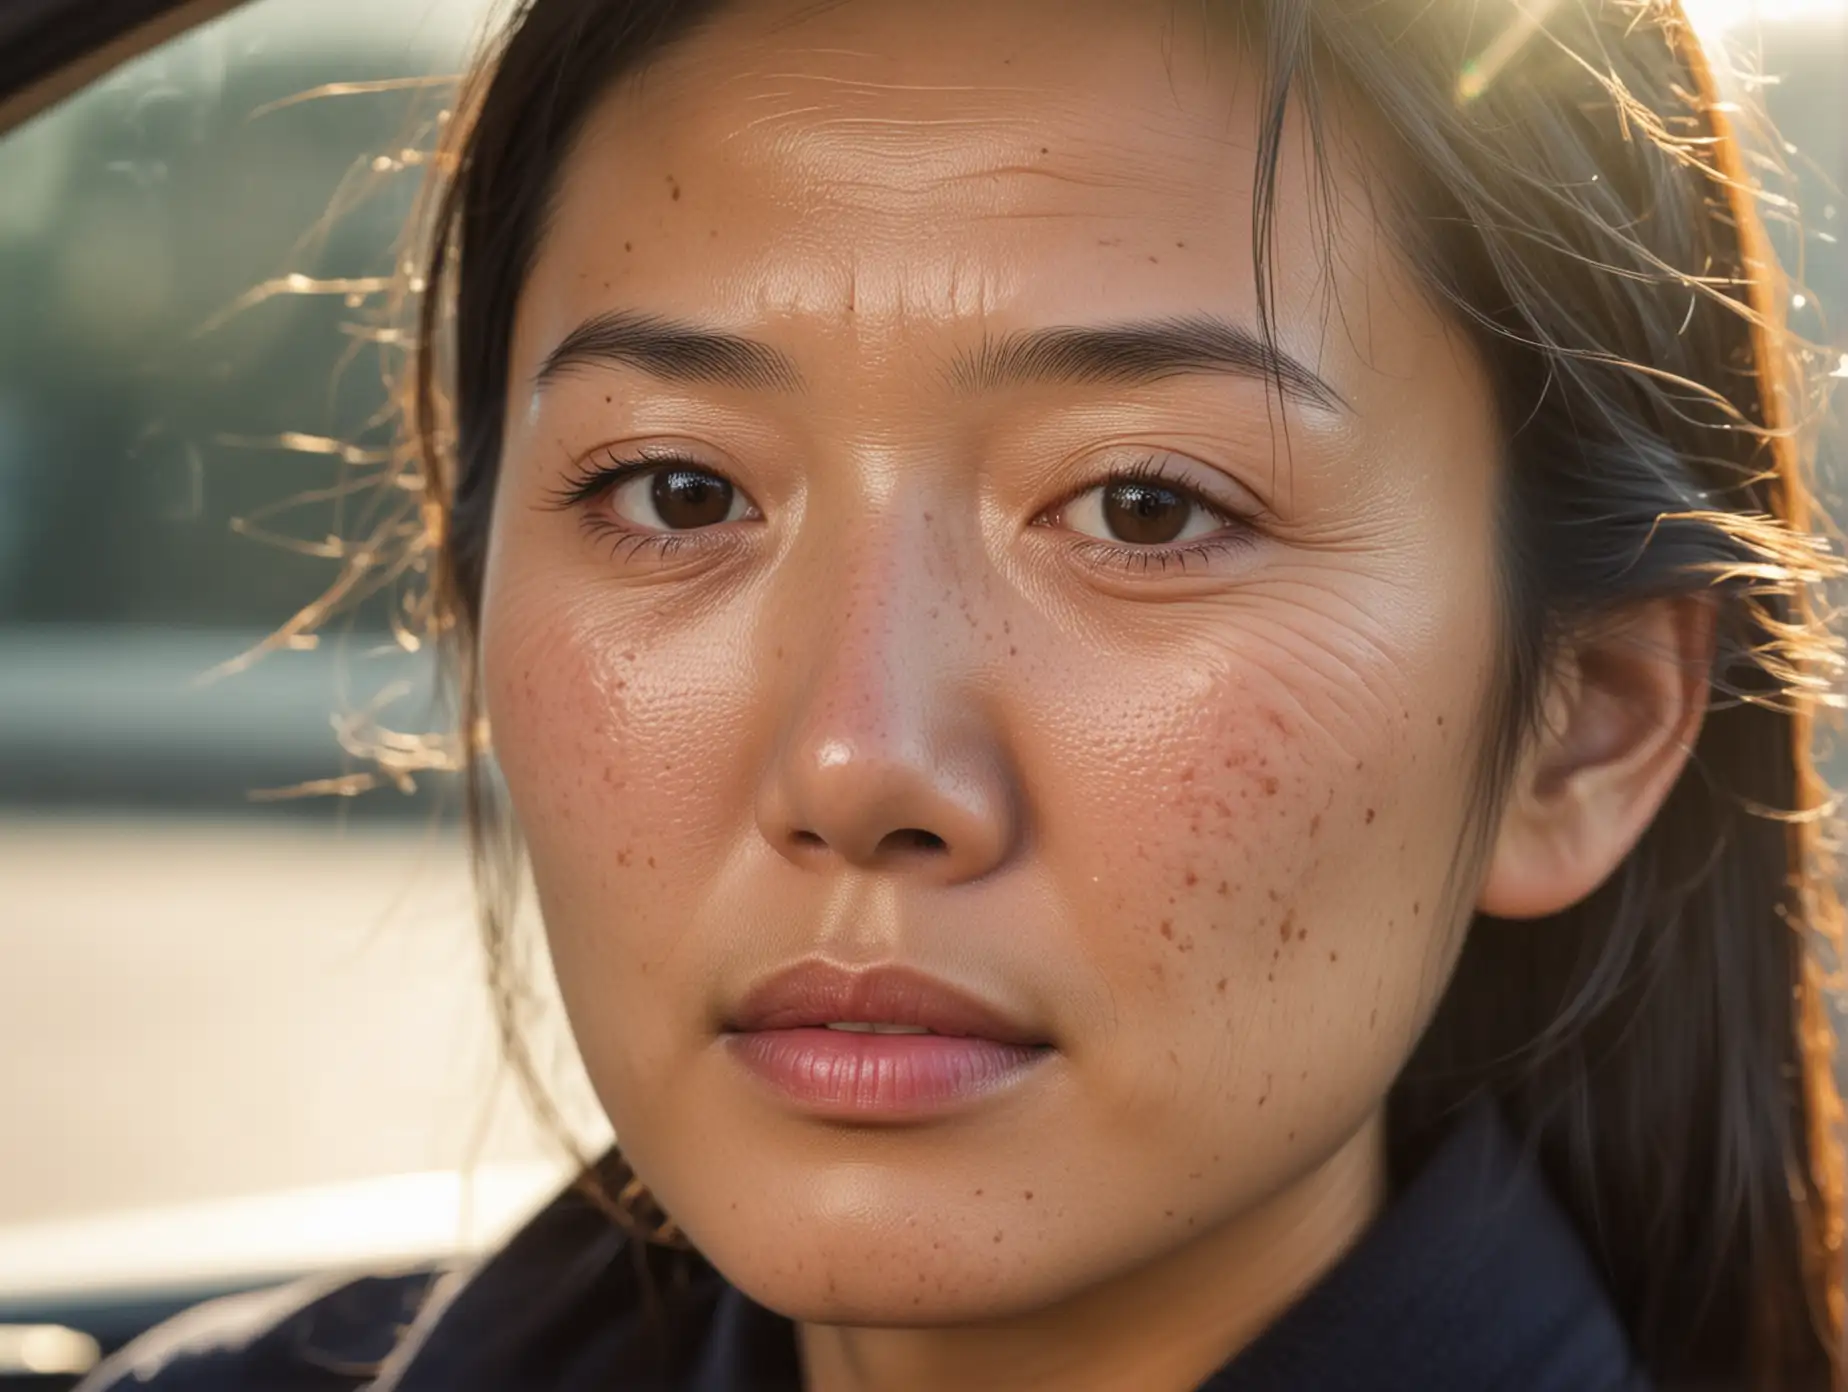 描绘一位中国女司机的脸部特写，一侧脸部有明显的皱纹和色斑，另一侧则相对年轻，背景中有阳光照射和车窗的反射。